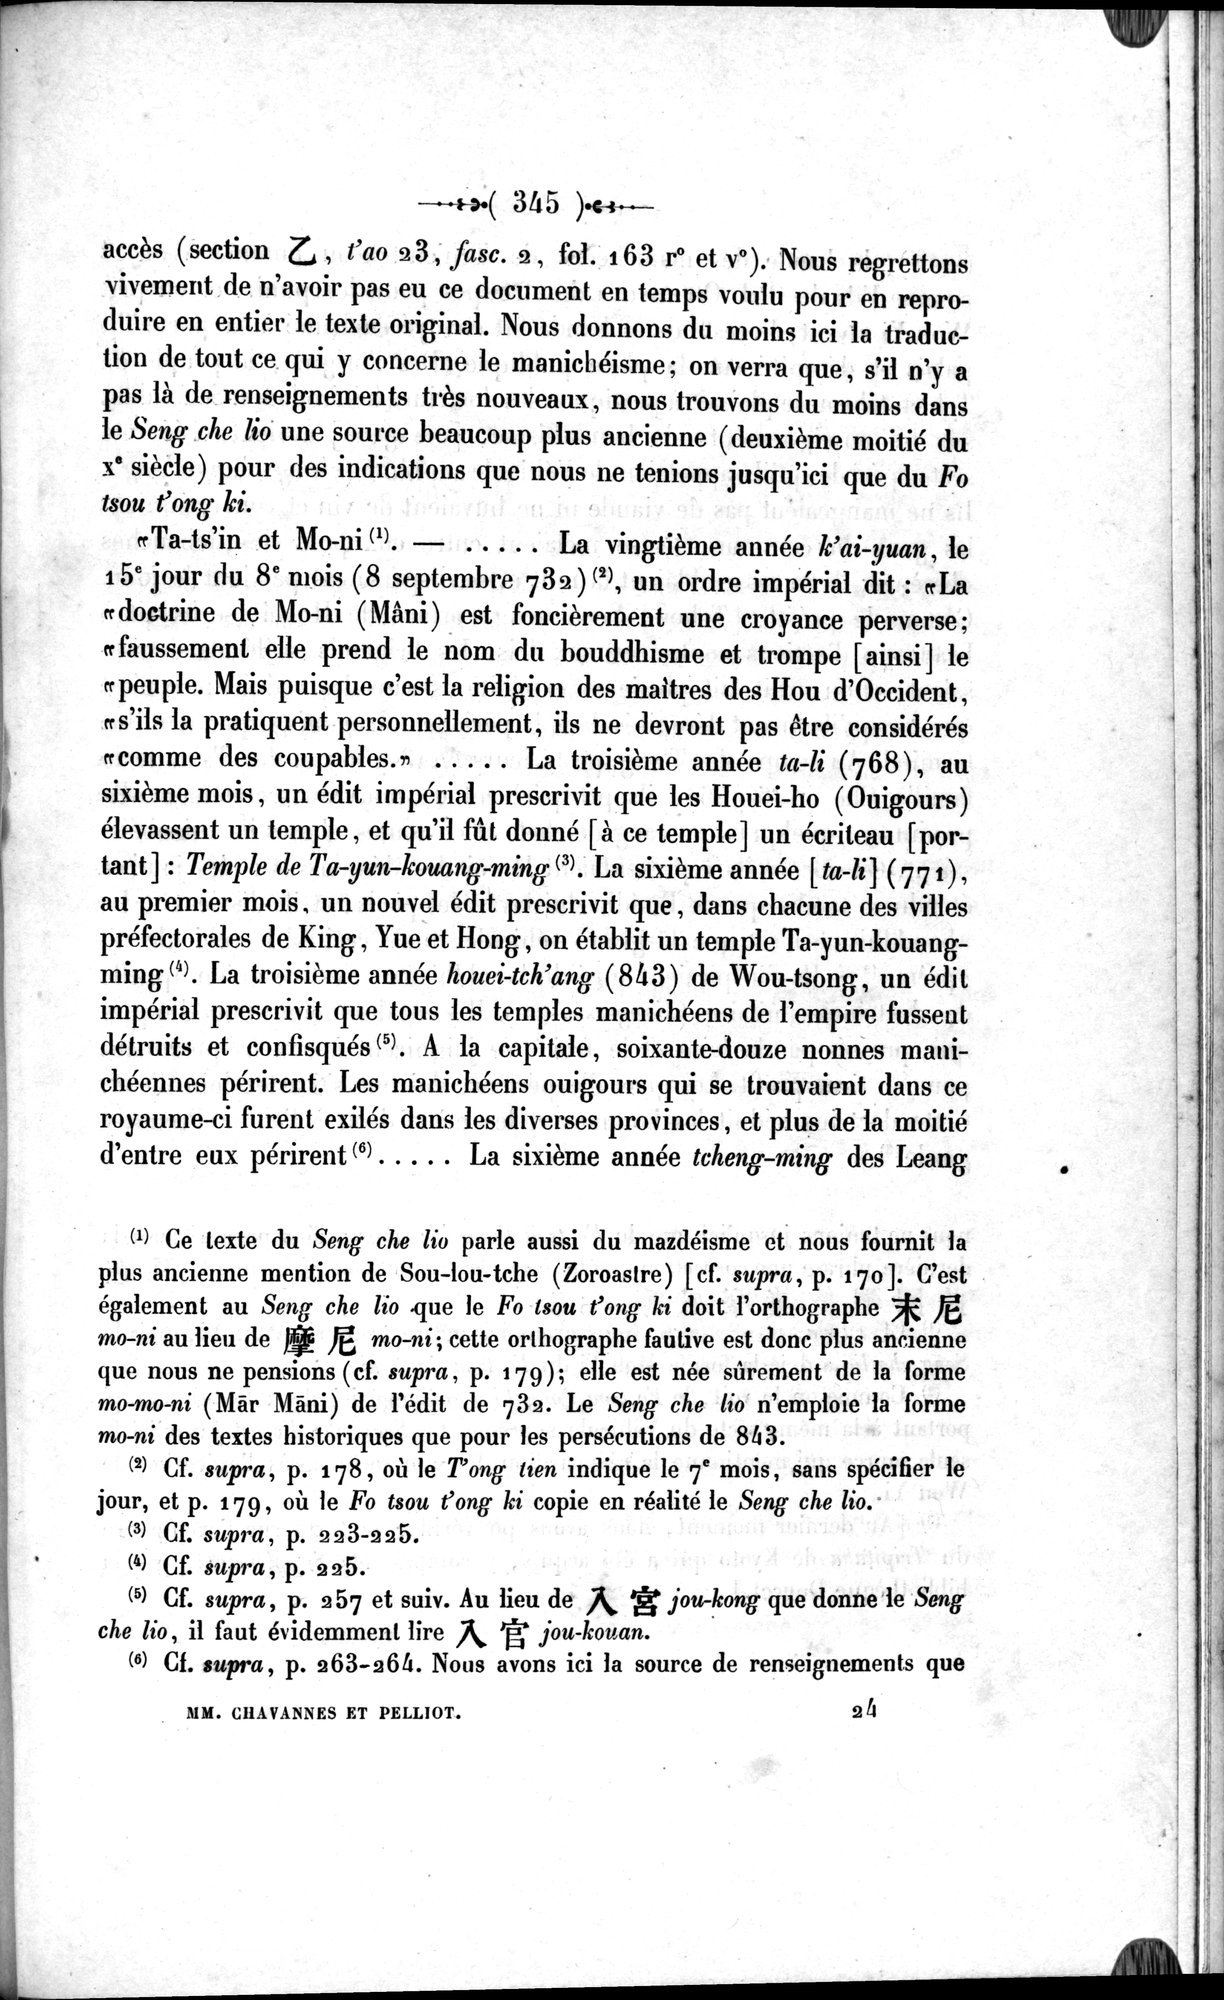 Un traité manichéen retrouvé en Chine : vol.1 / Page 355 (Grayscale High Resolution Image)